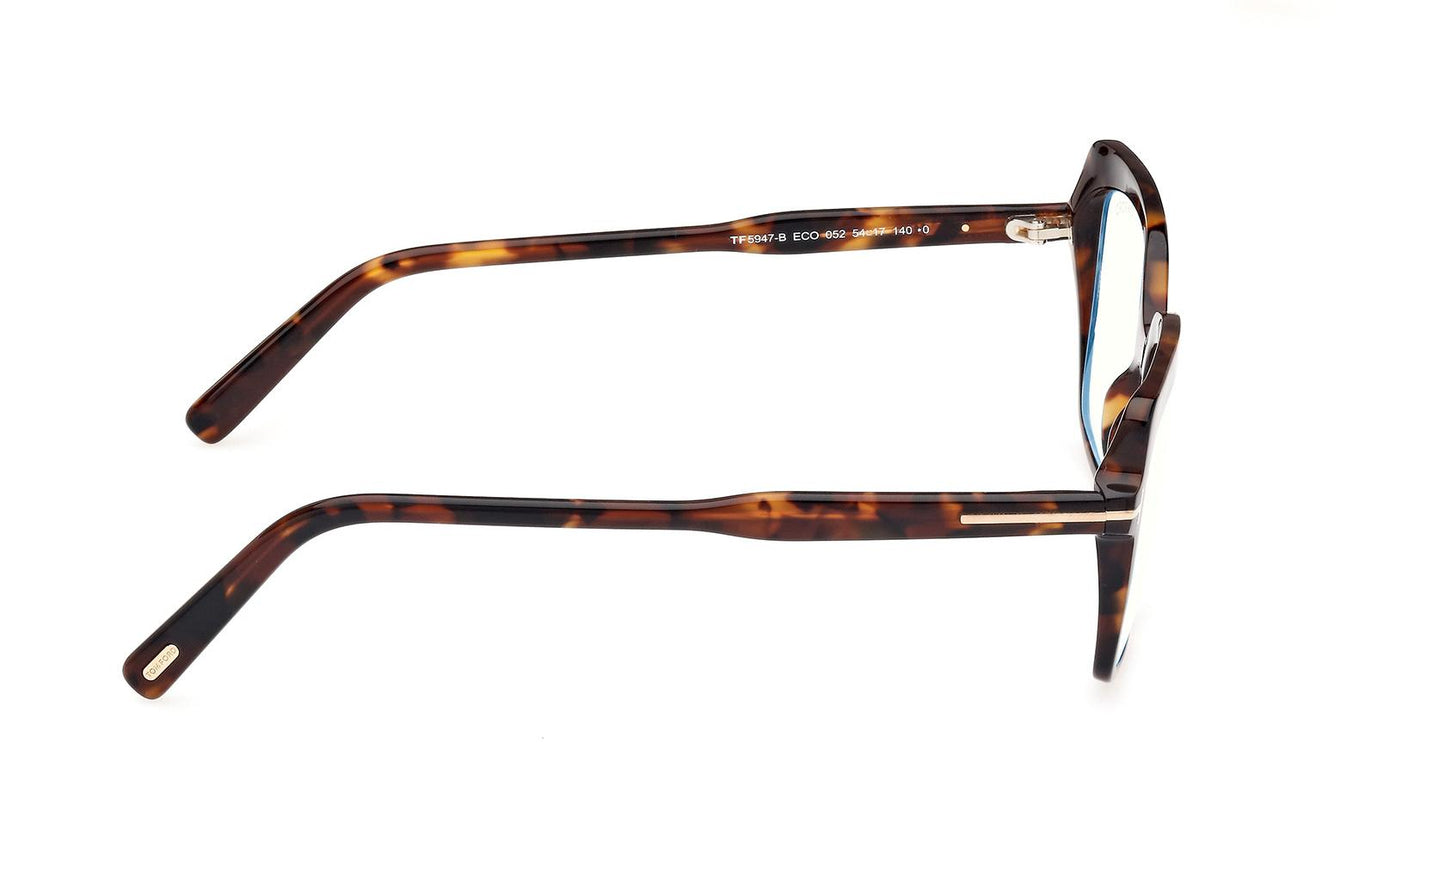 Tom Ford Eyeglasses FT5947/B 052